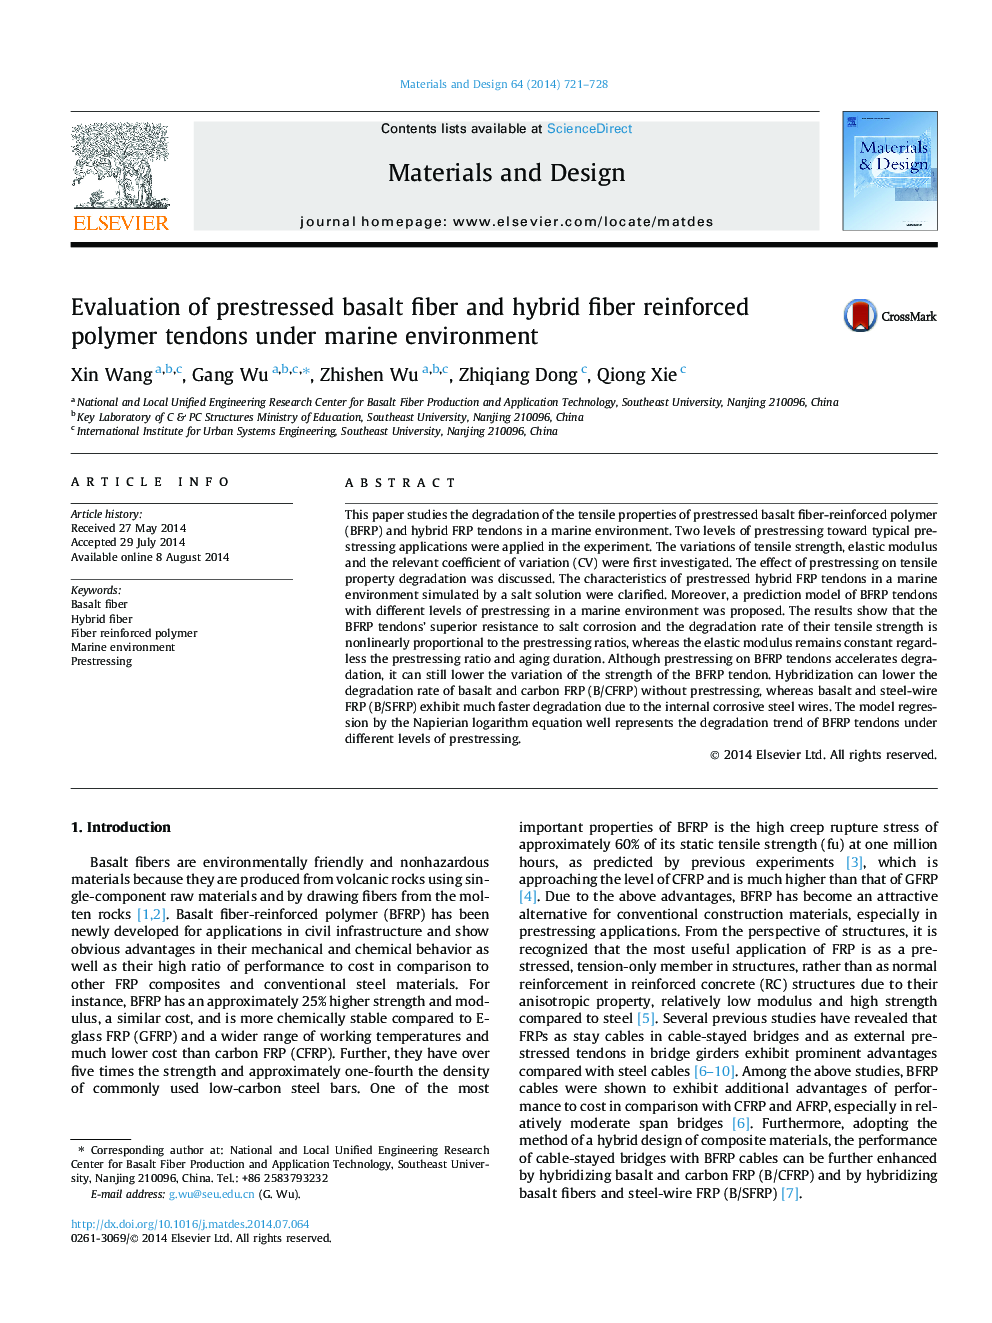 Evaluation of prestressed basalt fiber and hybrid fiber reinforced polymer tendons under marine environment